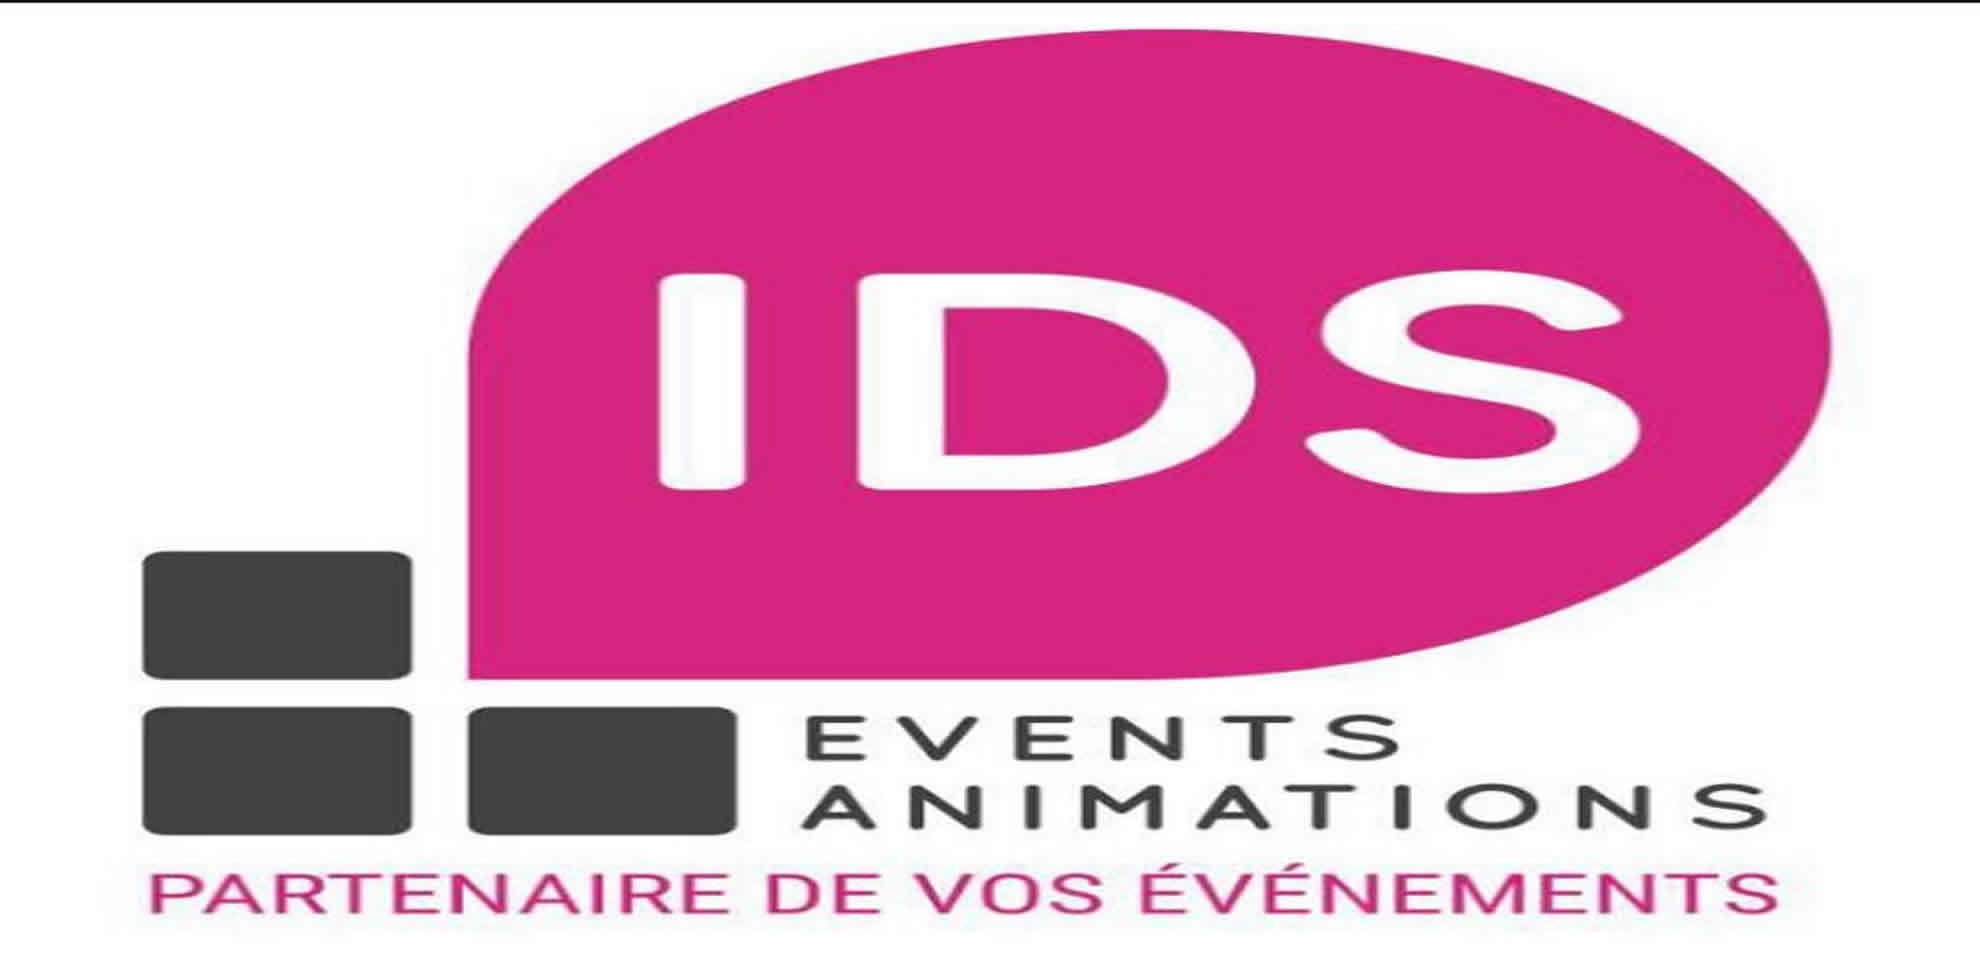 IDS EVENEMENTS